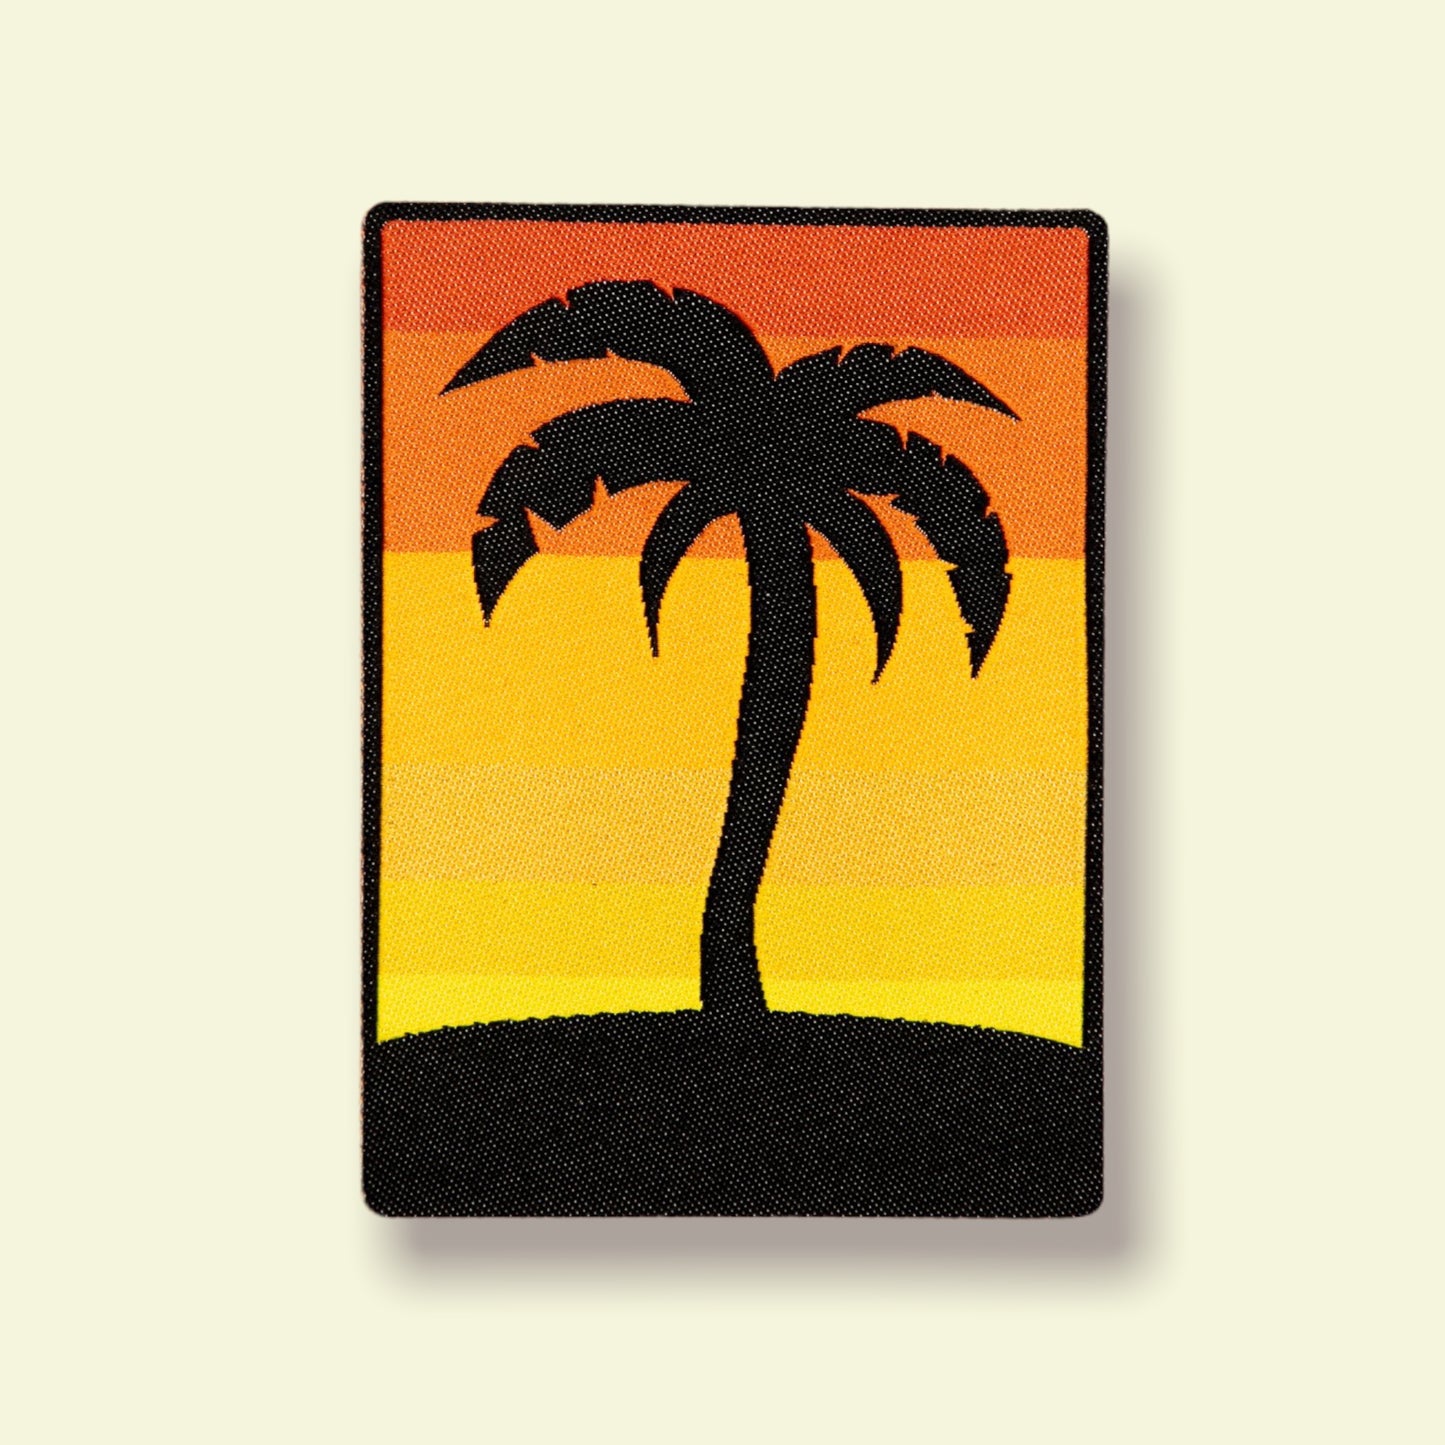 Palmtree and sunset